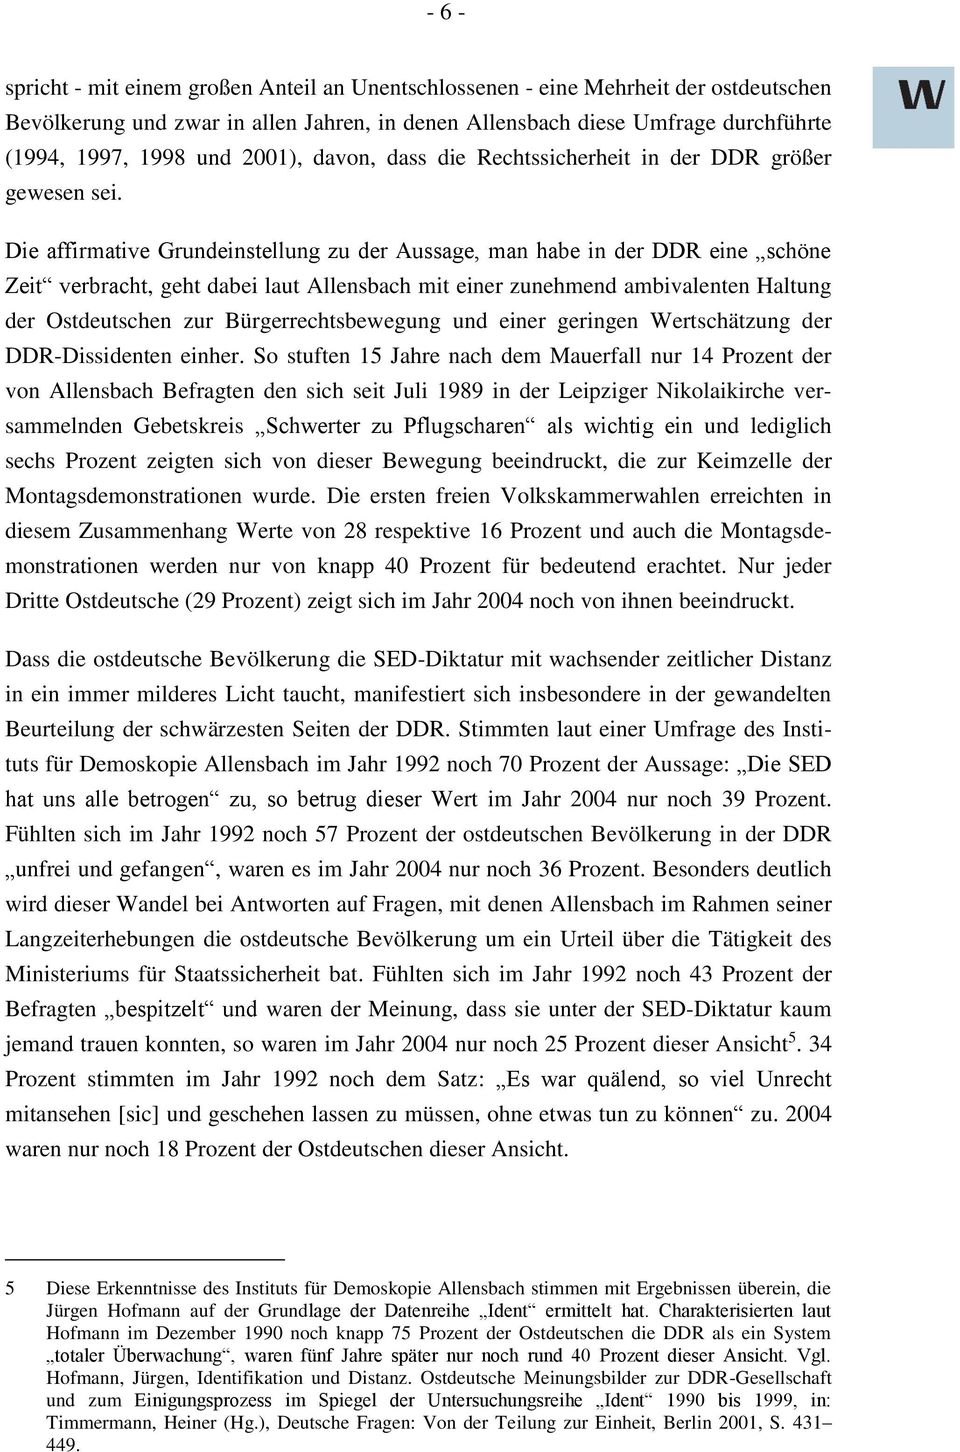 Die affirmative Grundeinstellung zu der Aussage, man habe in der DDR eine schöne Zeit verbracht, geht dabei laut Allensbach mit einer zunehmend ambivalenten Haltung der Ostdeutschen zur